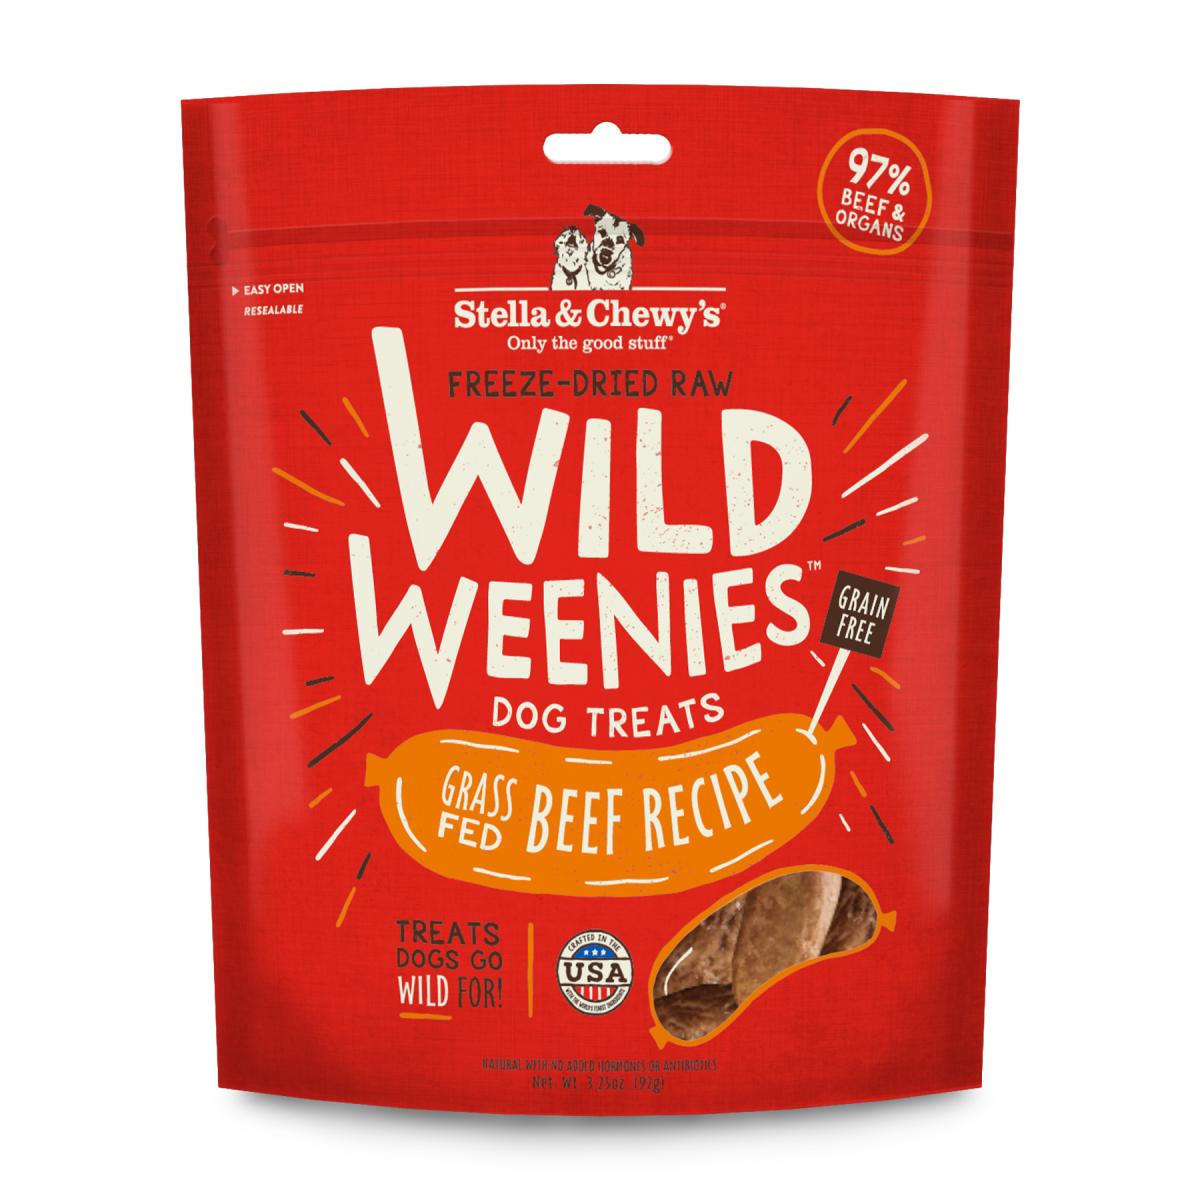 Wild Weenie Grass Fed Beef Recipe